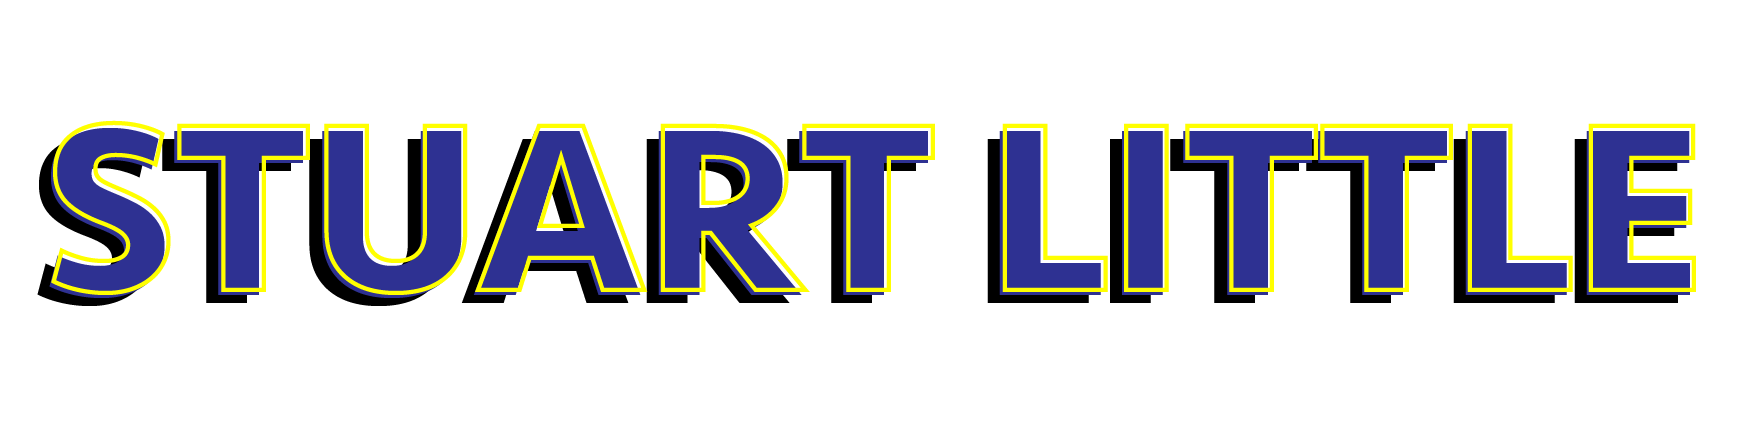 Stuart little logo